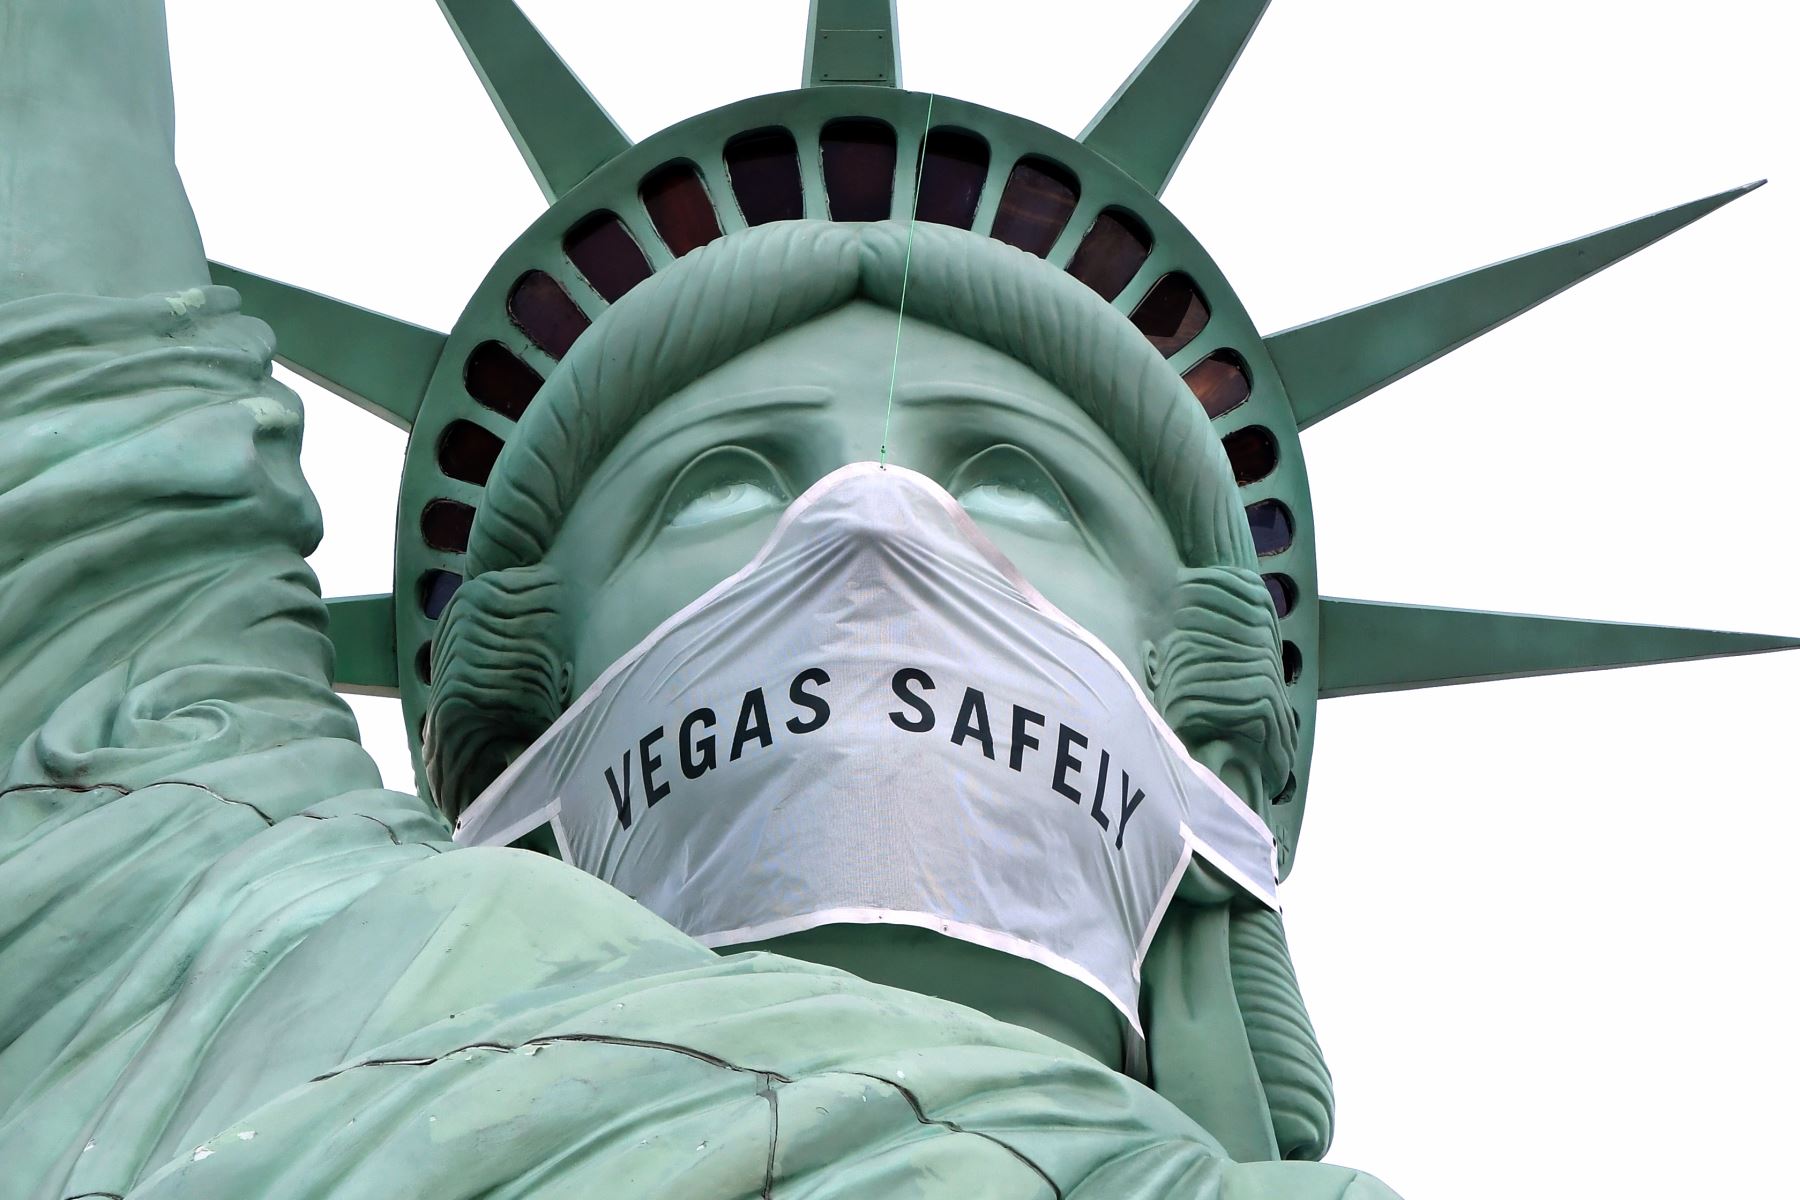 Una máscara de gran tamaño, que dice "Las Vegas, de manera segura", cubre la cara de la réplica de La Estatua de la Libertad en el New York-New York Hotel & Casino en Las Vegas, Nevada. Foto: AFP